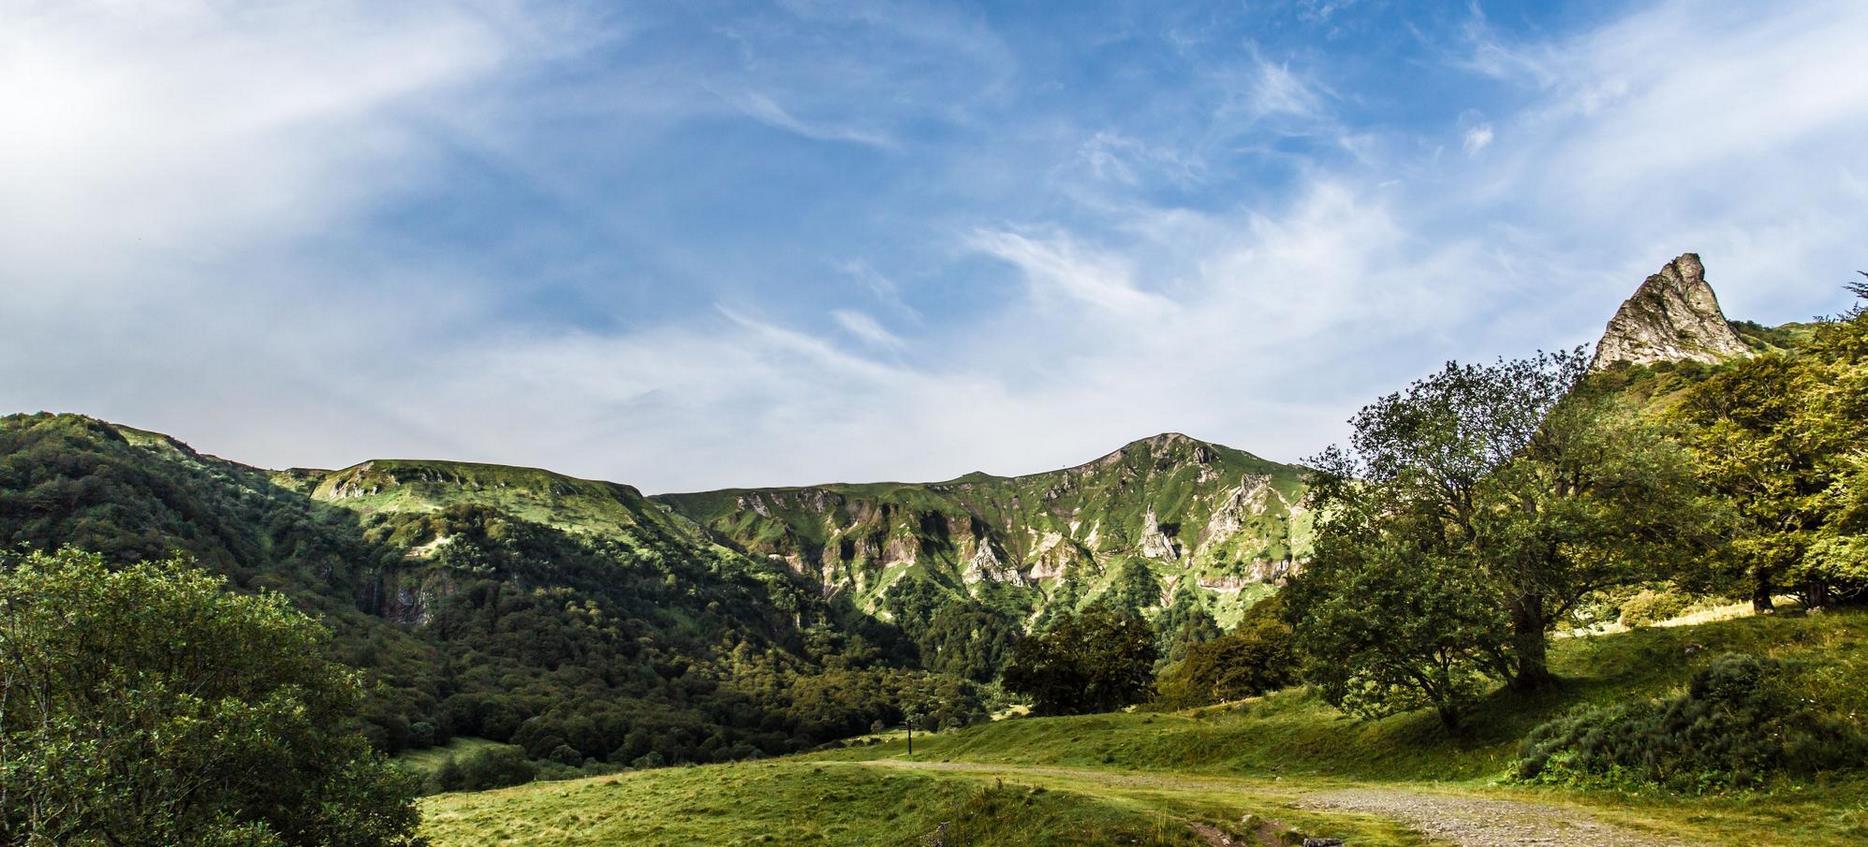 Super Besse - panorama du parc naturel de la Vallee de Chaudefour